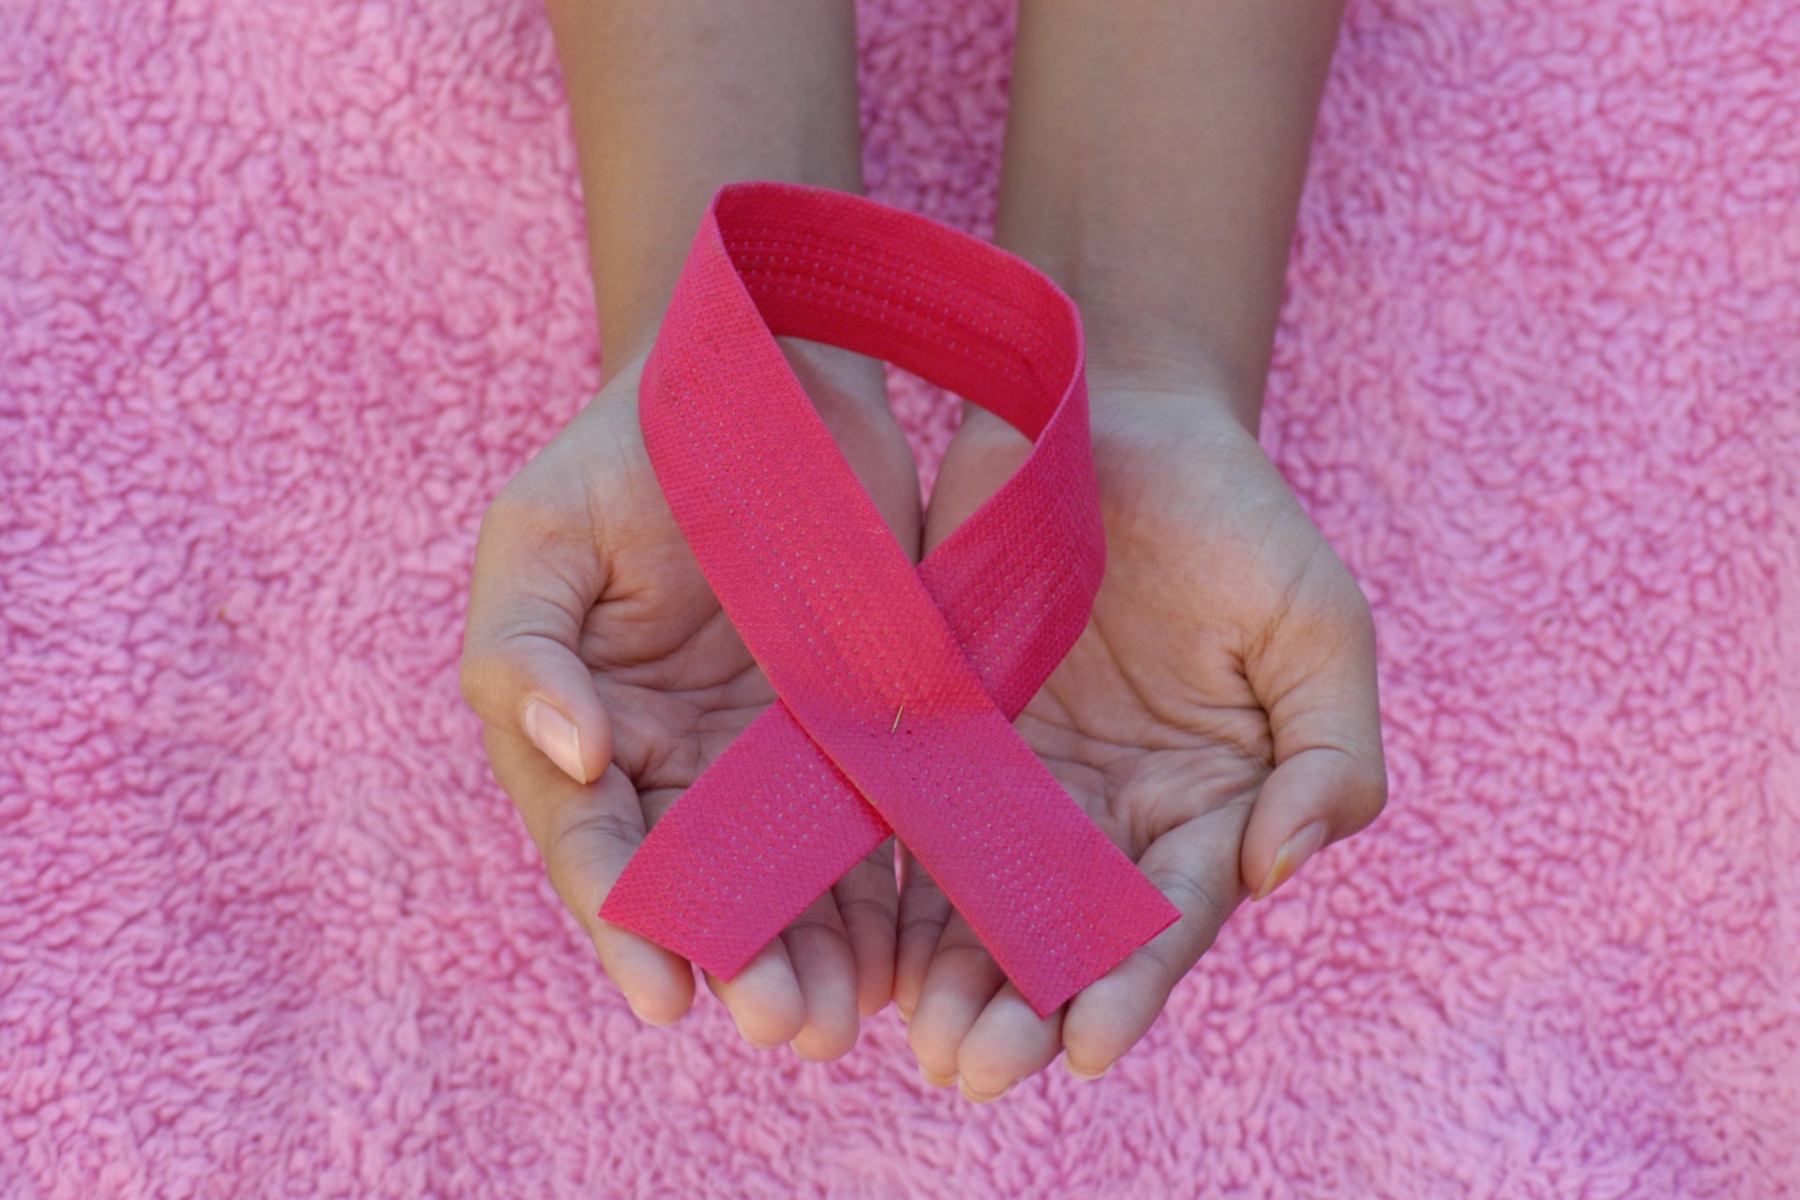 Καρκίνος του μαστού: Πώς η ορμονική θεραπεία λειτουργεί στη θεραπεία του καρκίνου του μαστού, ανάλογα τη φυλή του ασθενούς